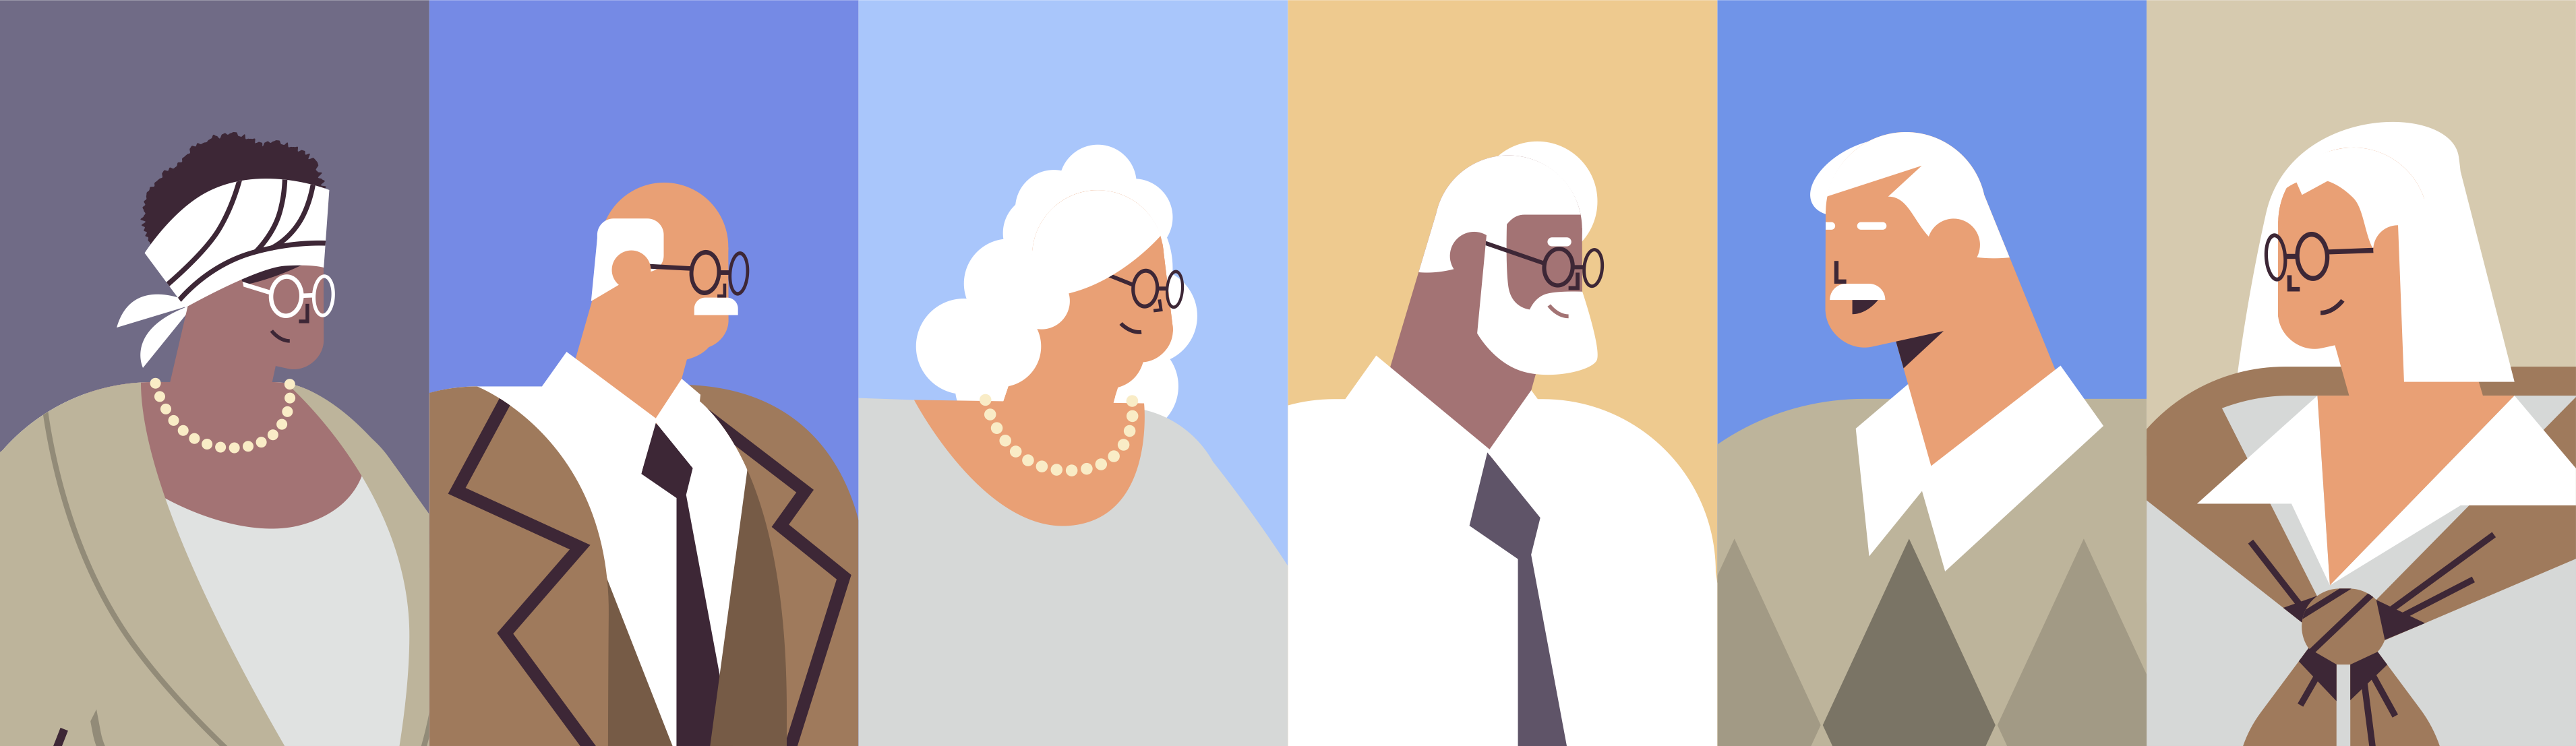 Illustration of older adults